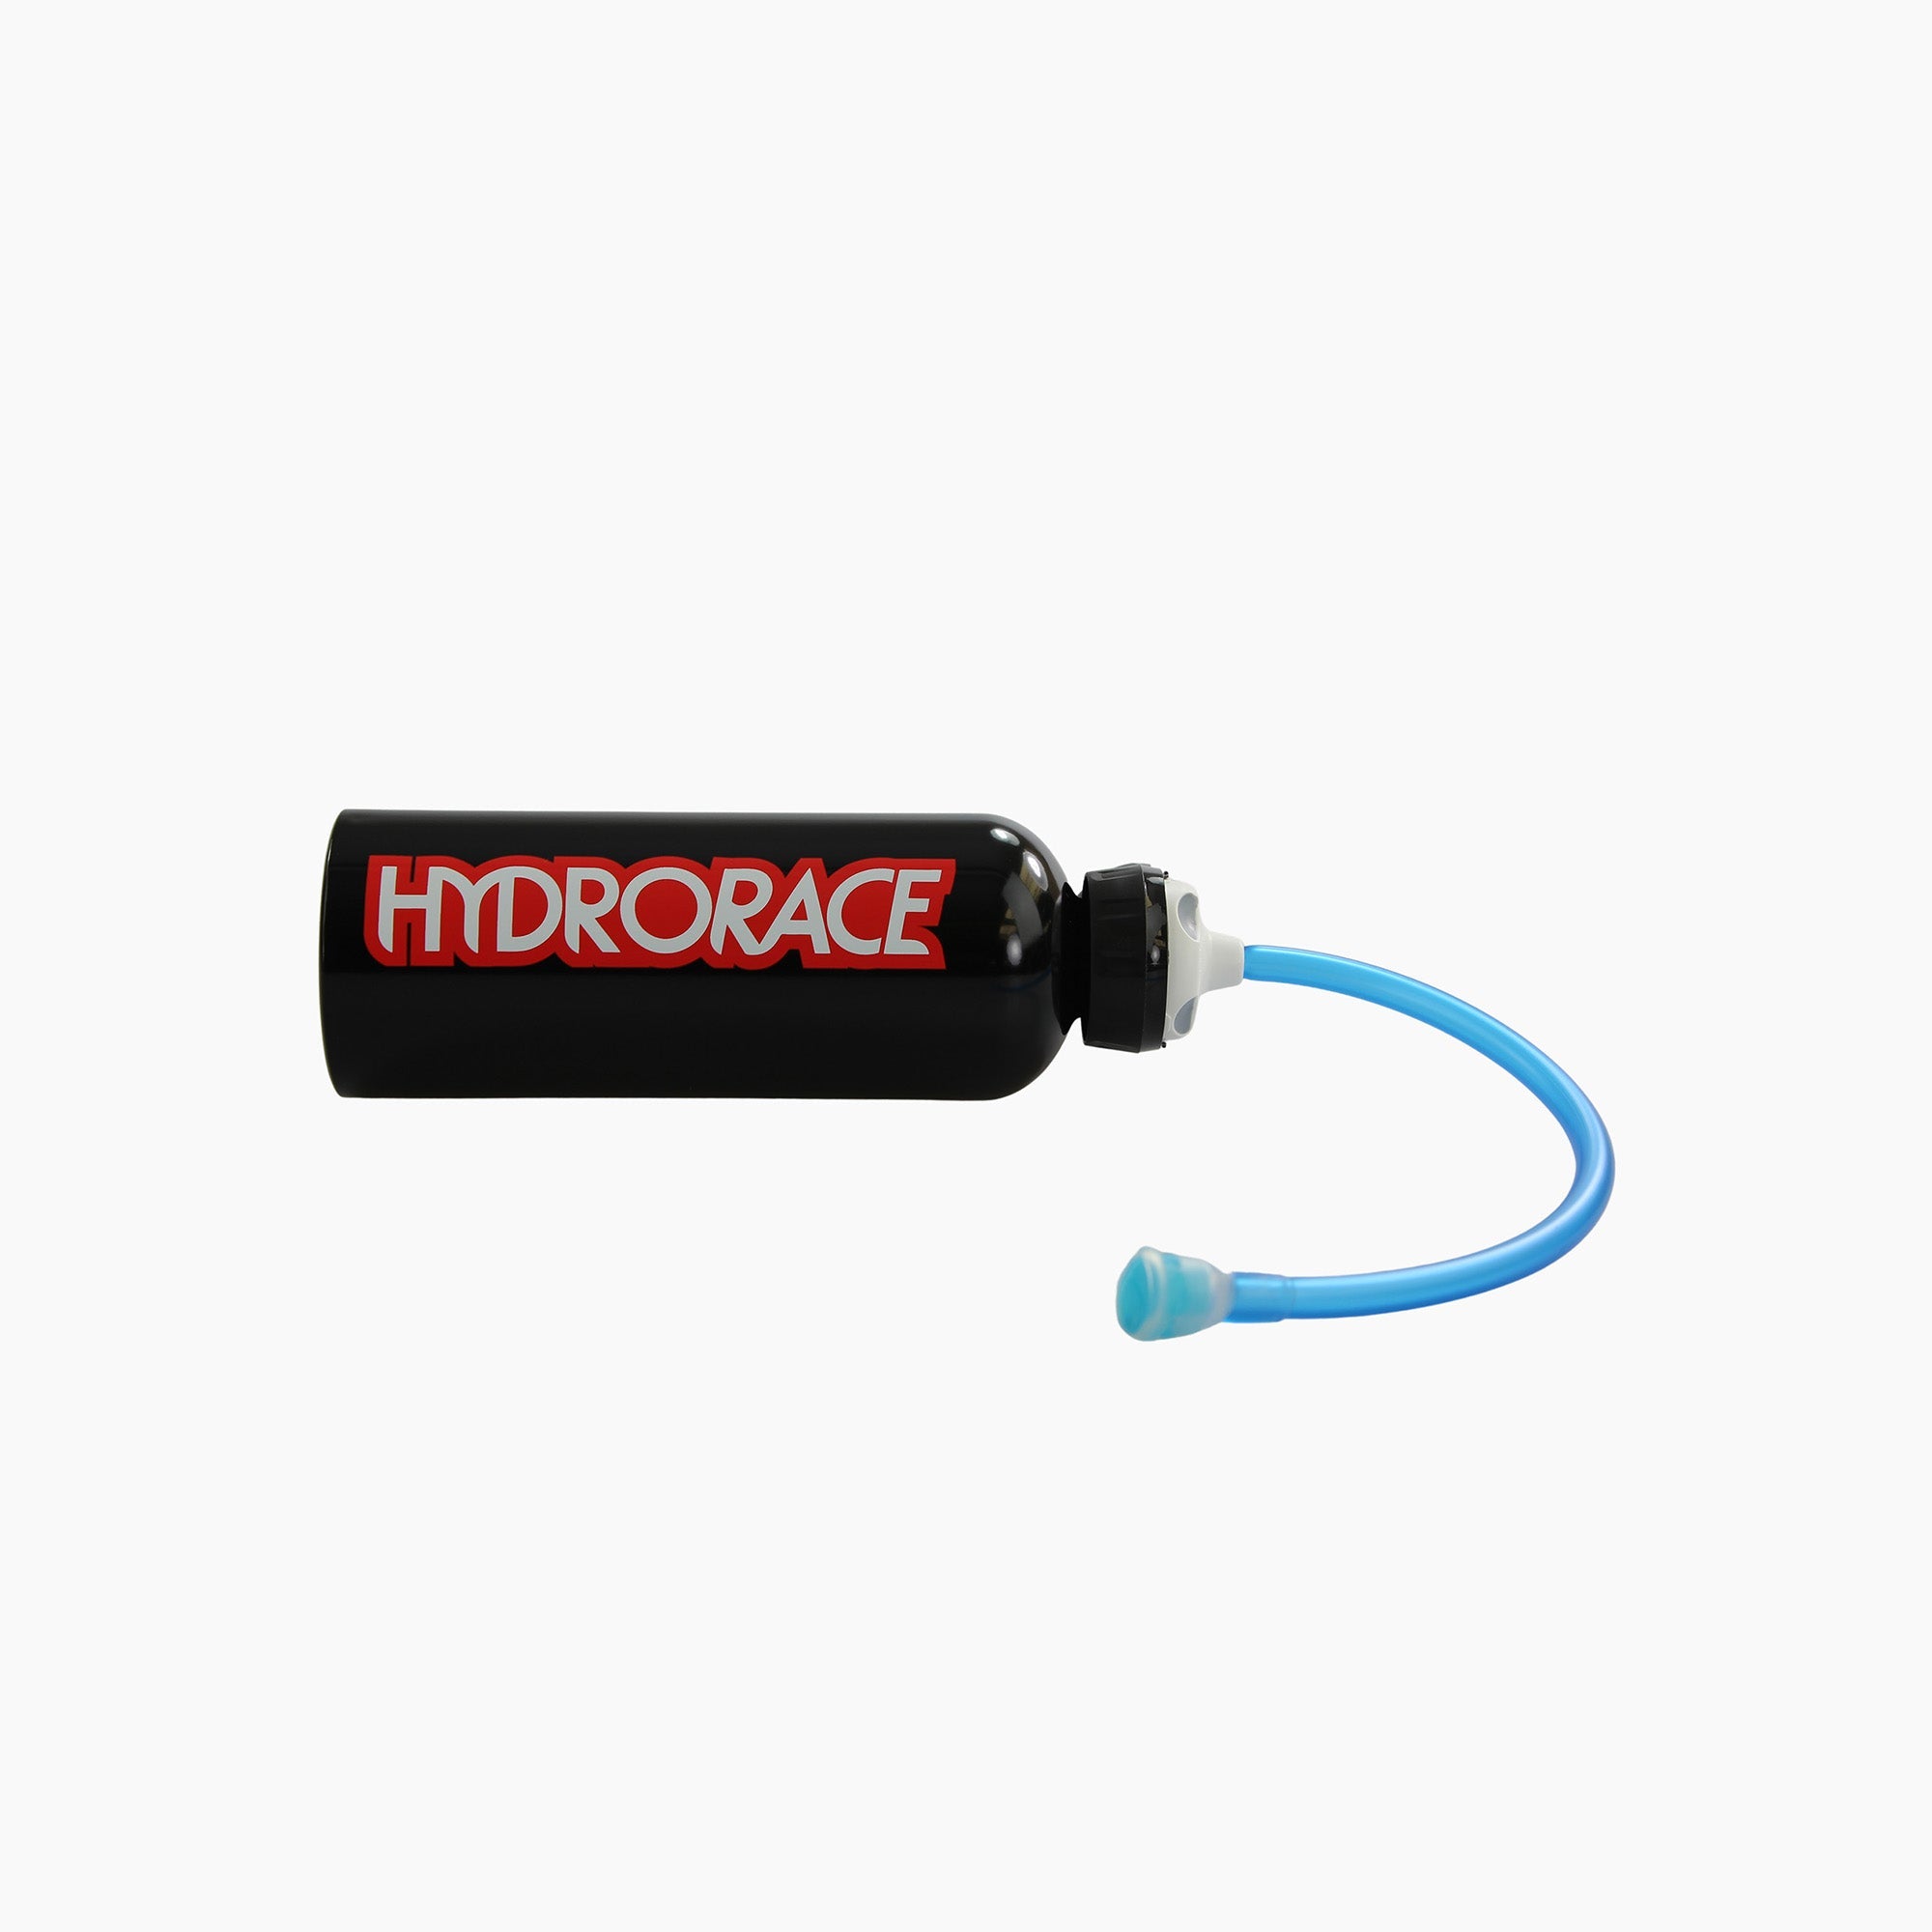 Hydrorace Drinking Bottle-Drinking Bottle-Hydrorace-gpx-store